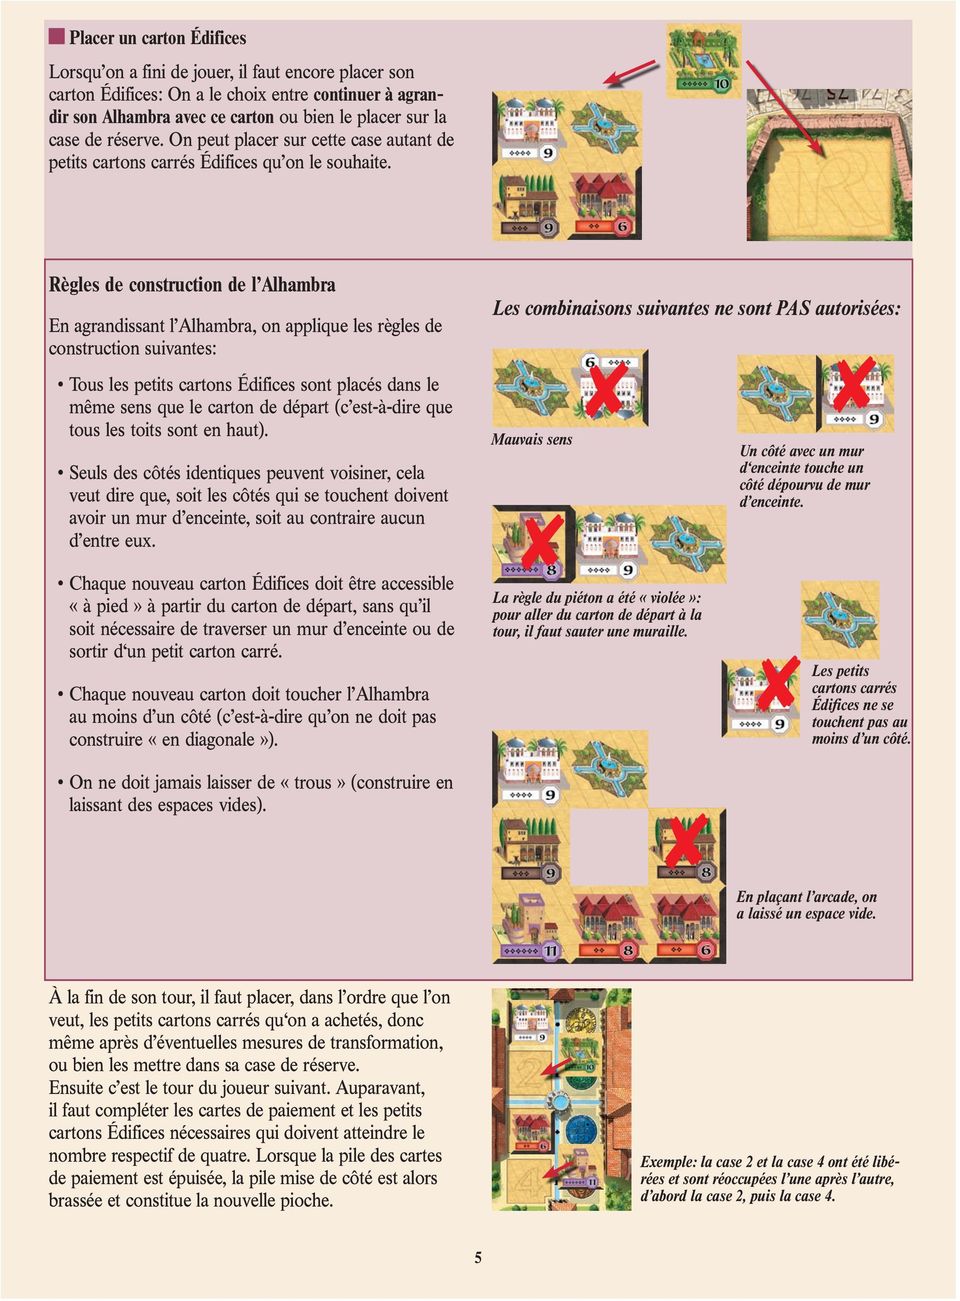 Règles de construction de l Alhambra En agrandissant l Alhambra, on applique les règles de construction suivantes: Tous les petits cartons Édifices sont placés dans le même sens que le carton de